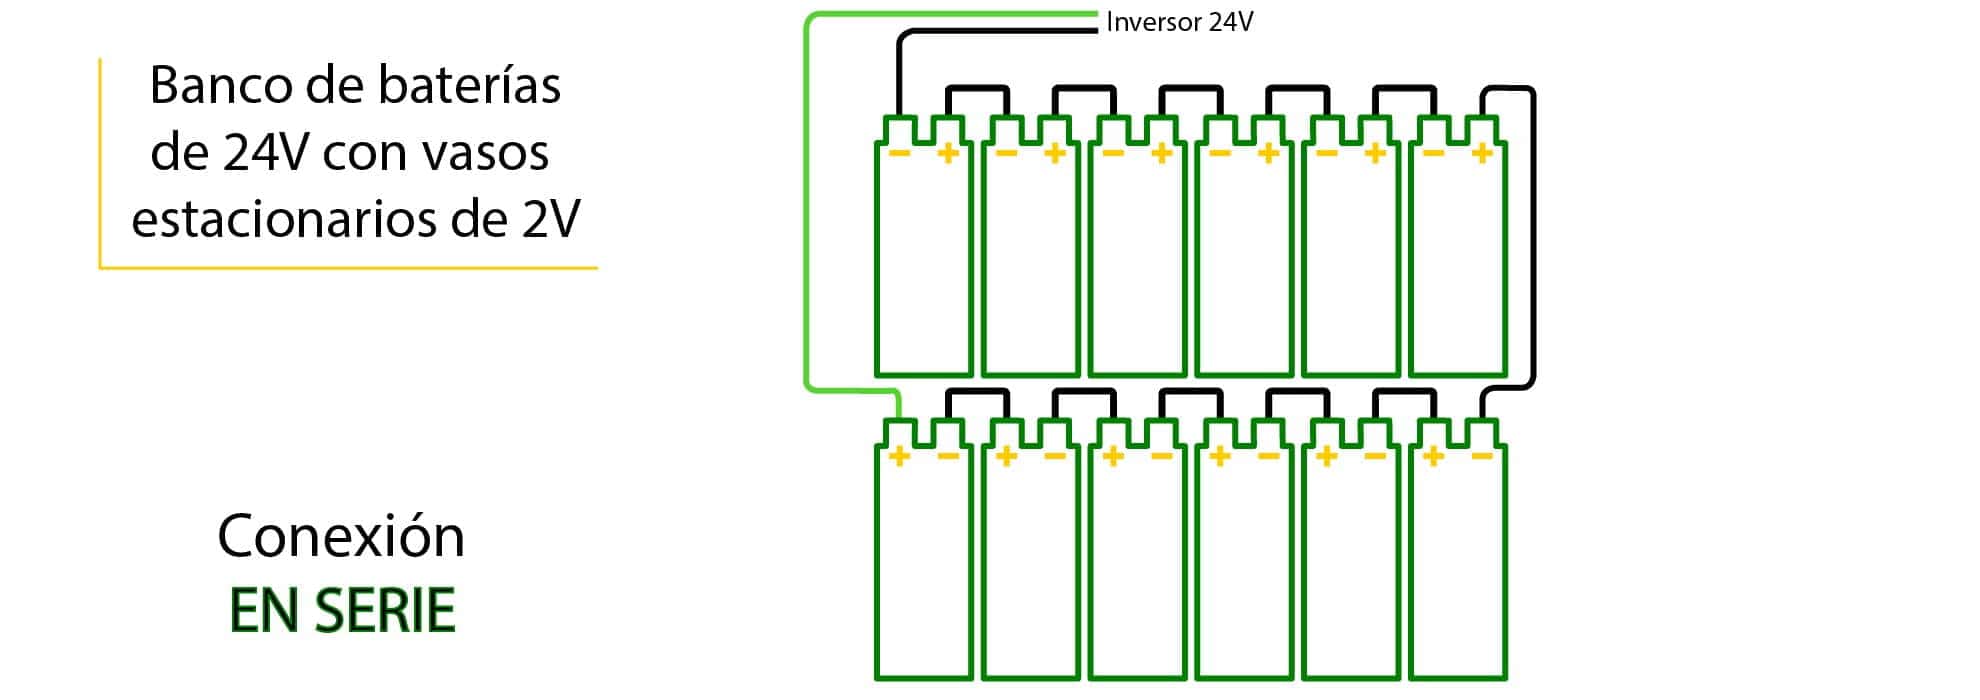 Conexión de vasos de 2V para conseguir banco de baterías de 24V